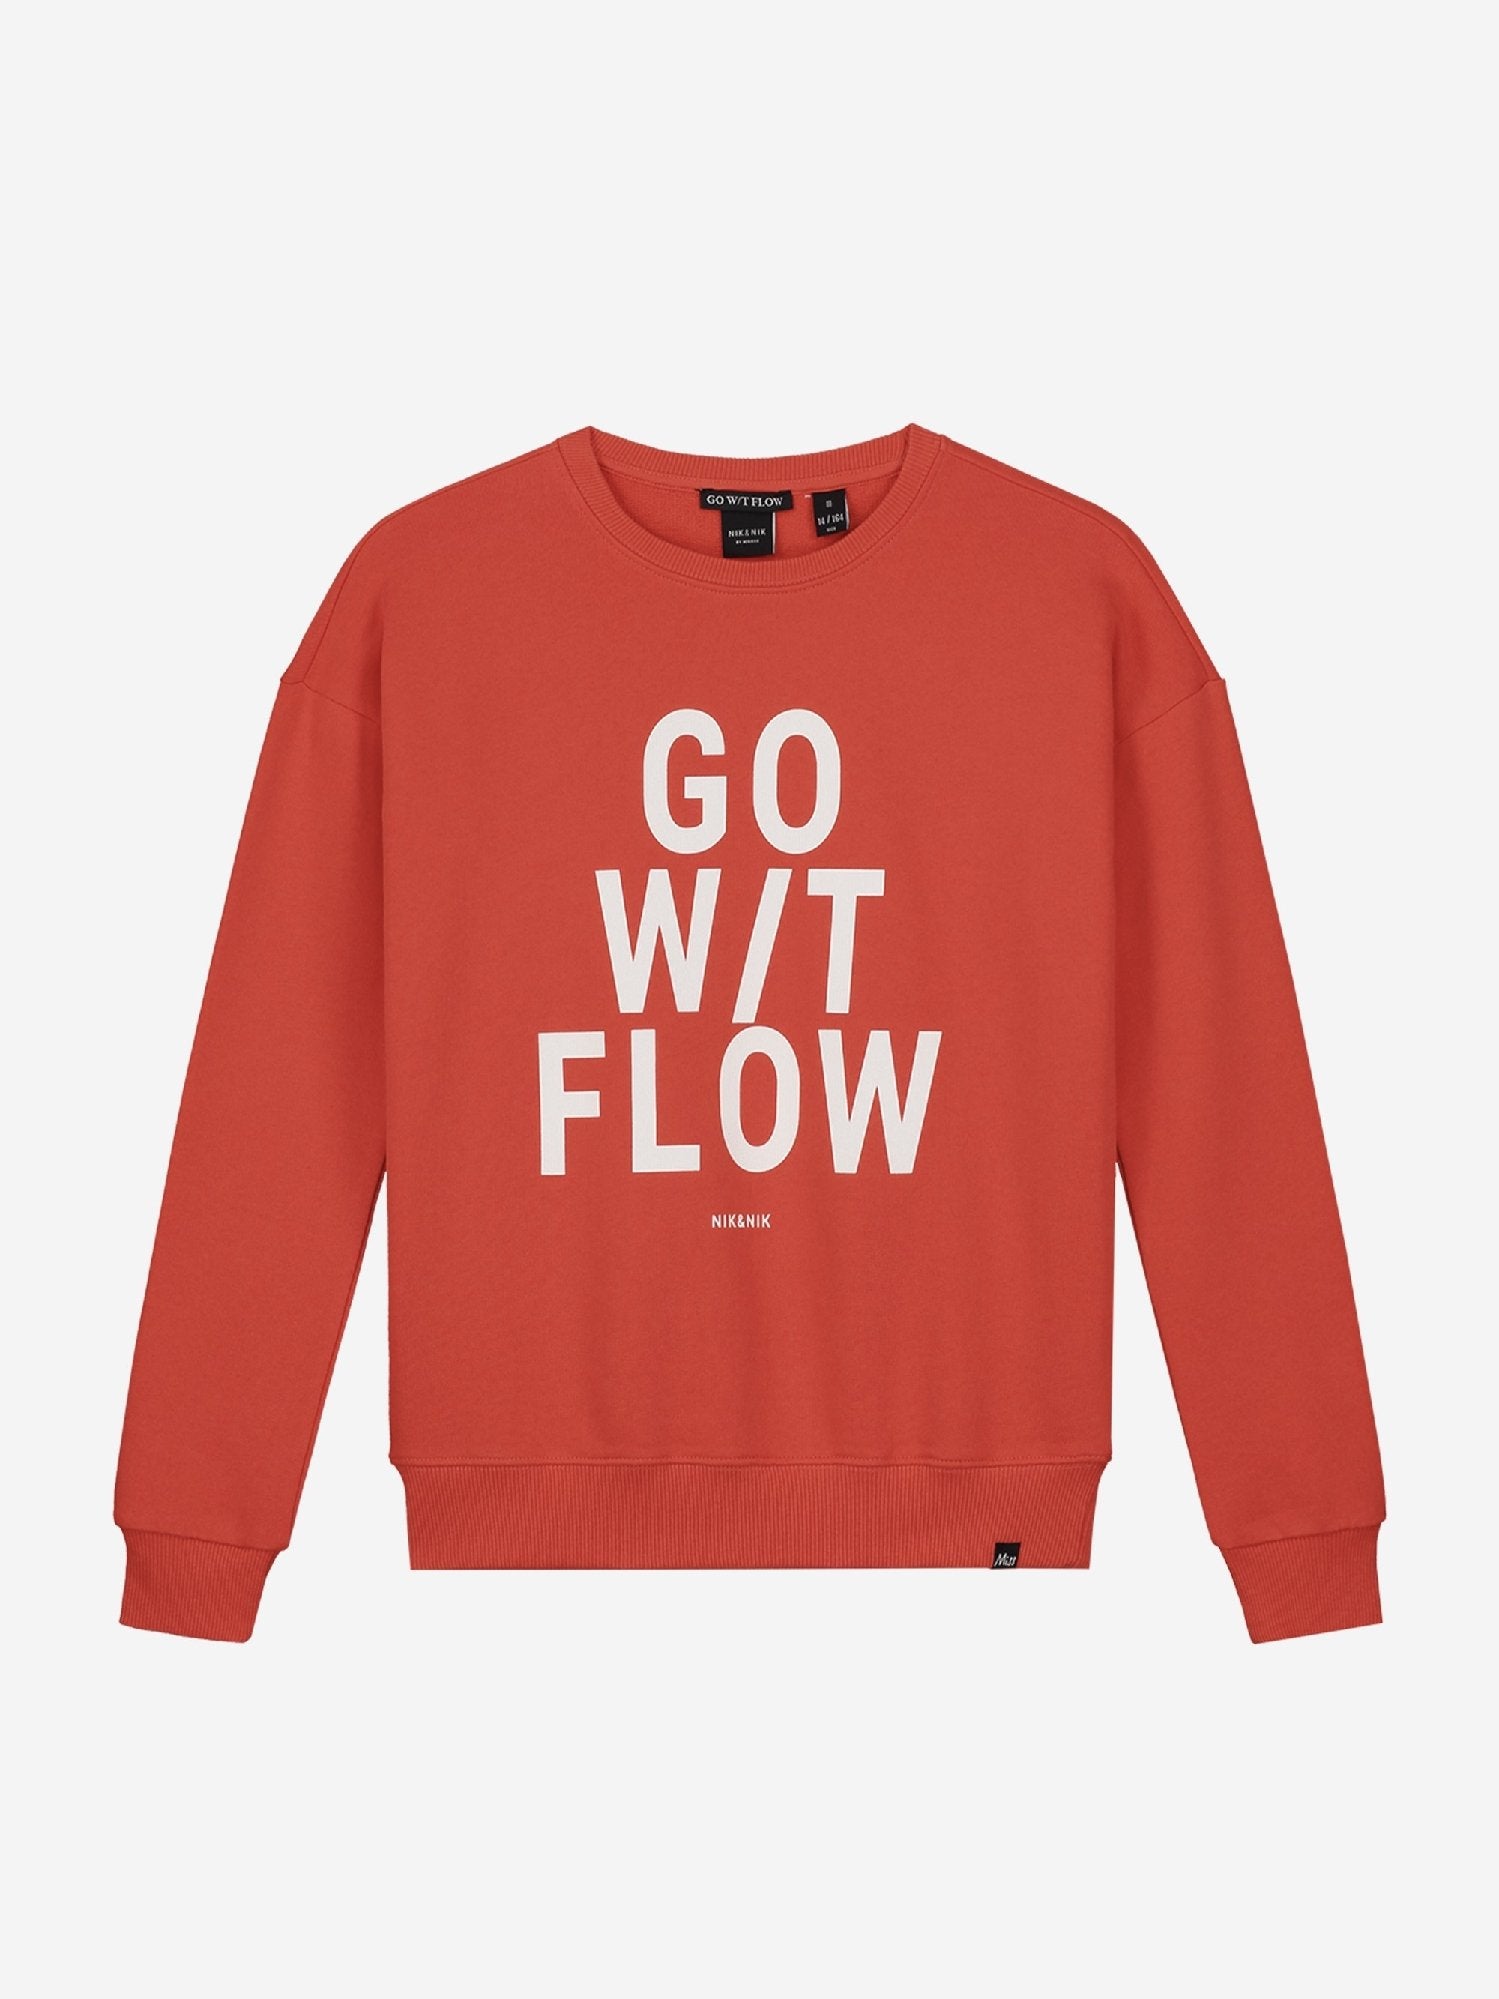 Meisjes Flow Sweater van Nik & Nik in de kleur Rood in maat 176.